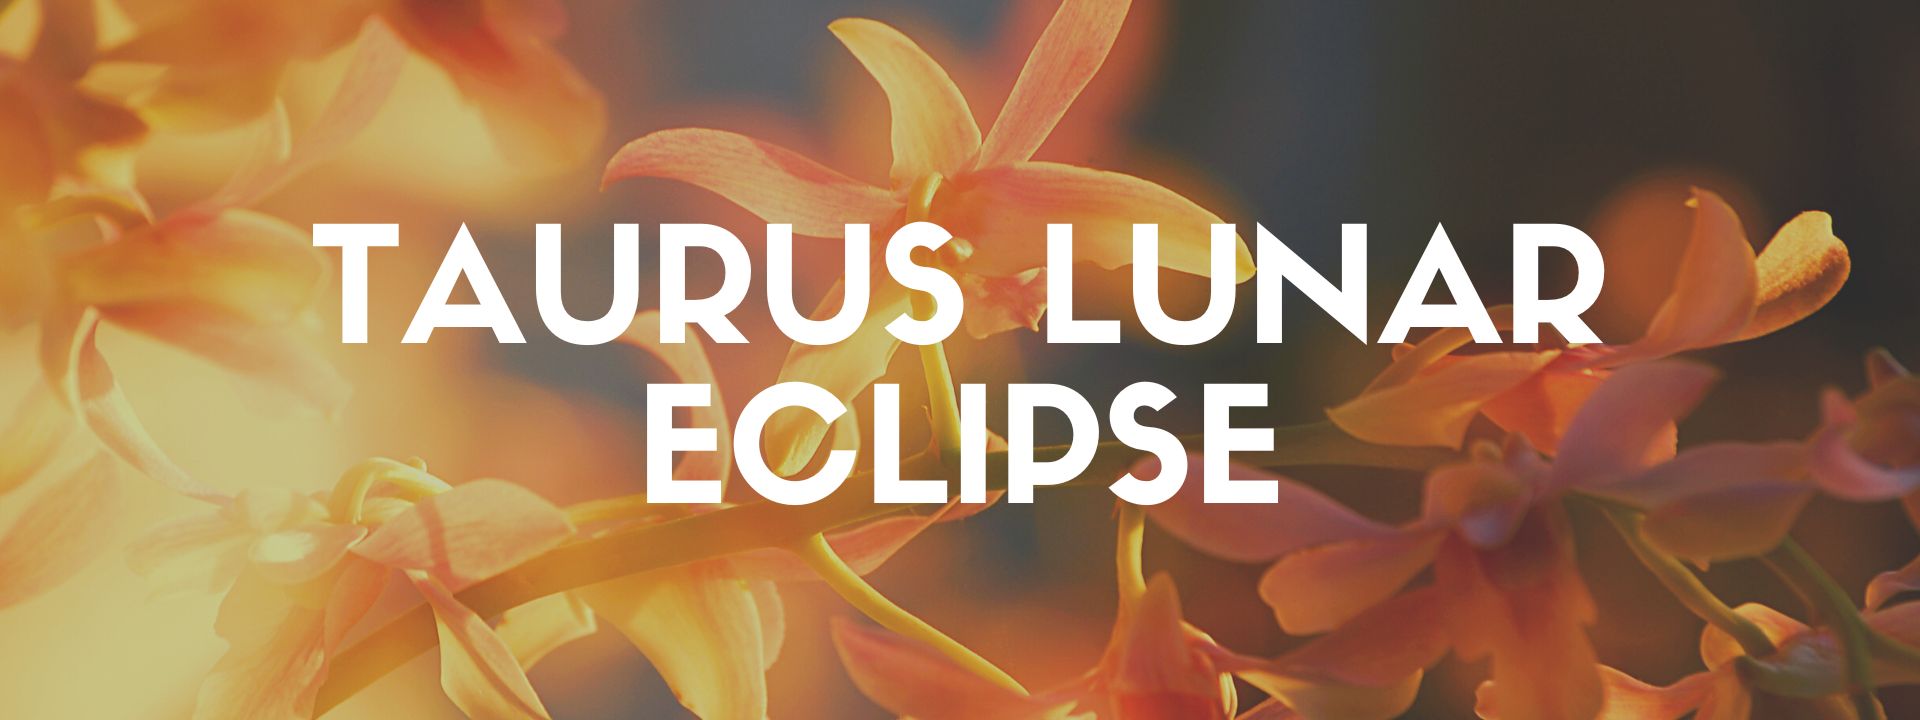 Taurus Lunar Eclipse 2022 - The Dark Pixie Astrology